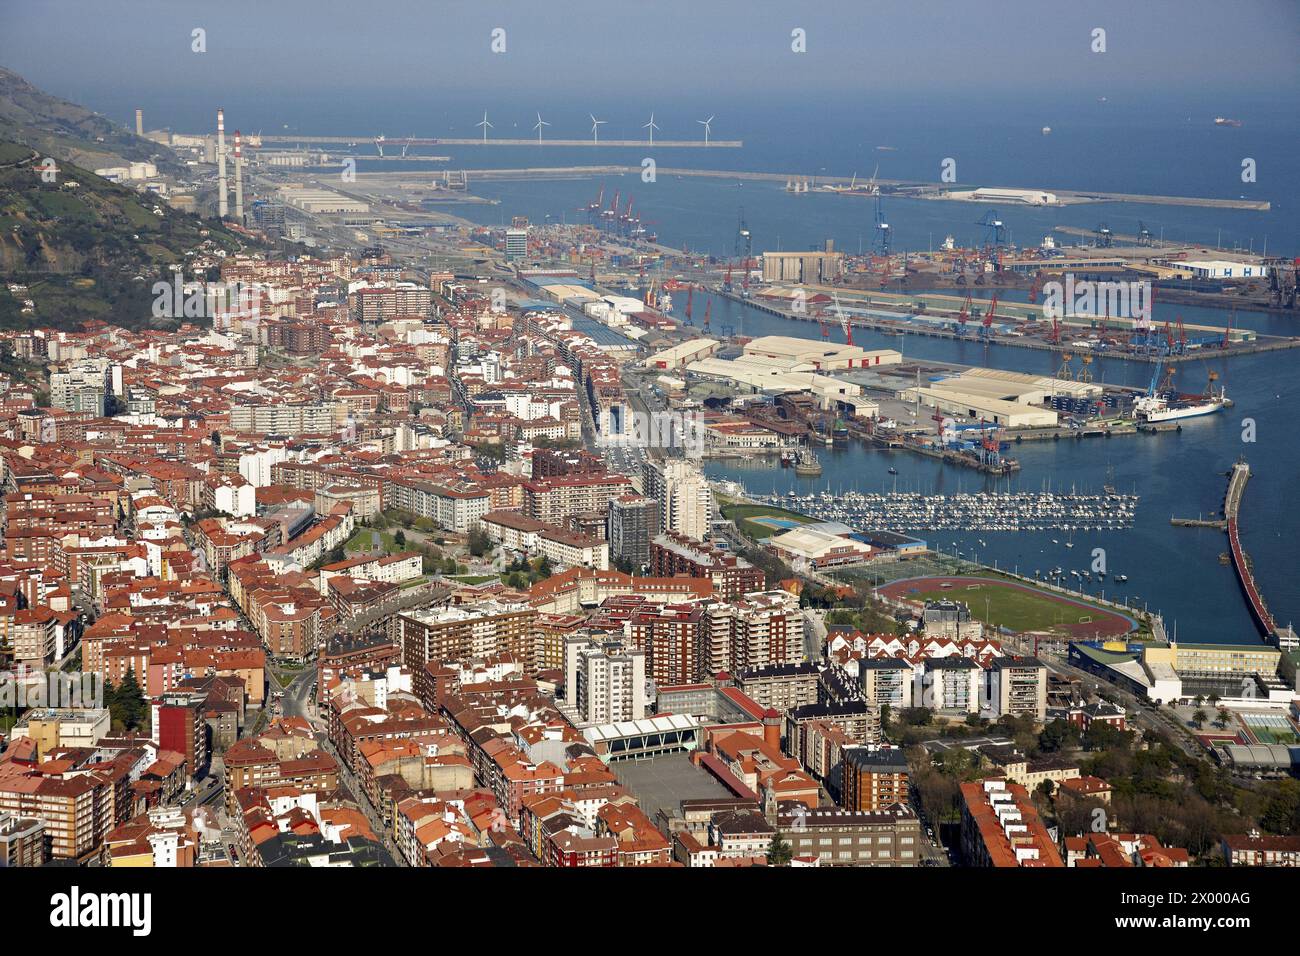 Santurtzi, Puerto de Bilbao, Biscay, Basque Country, Spain. Stock Photo